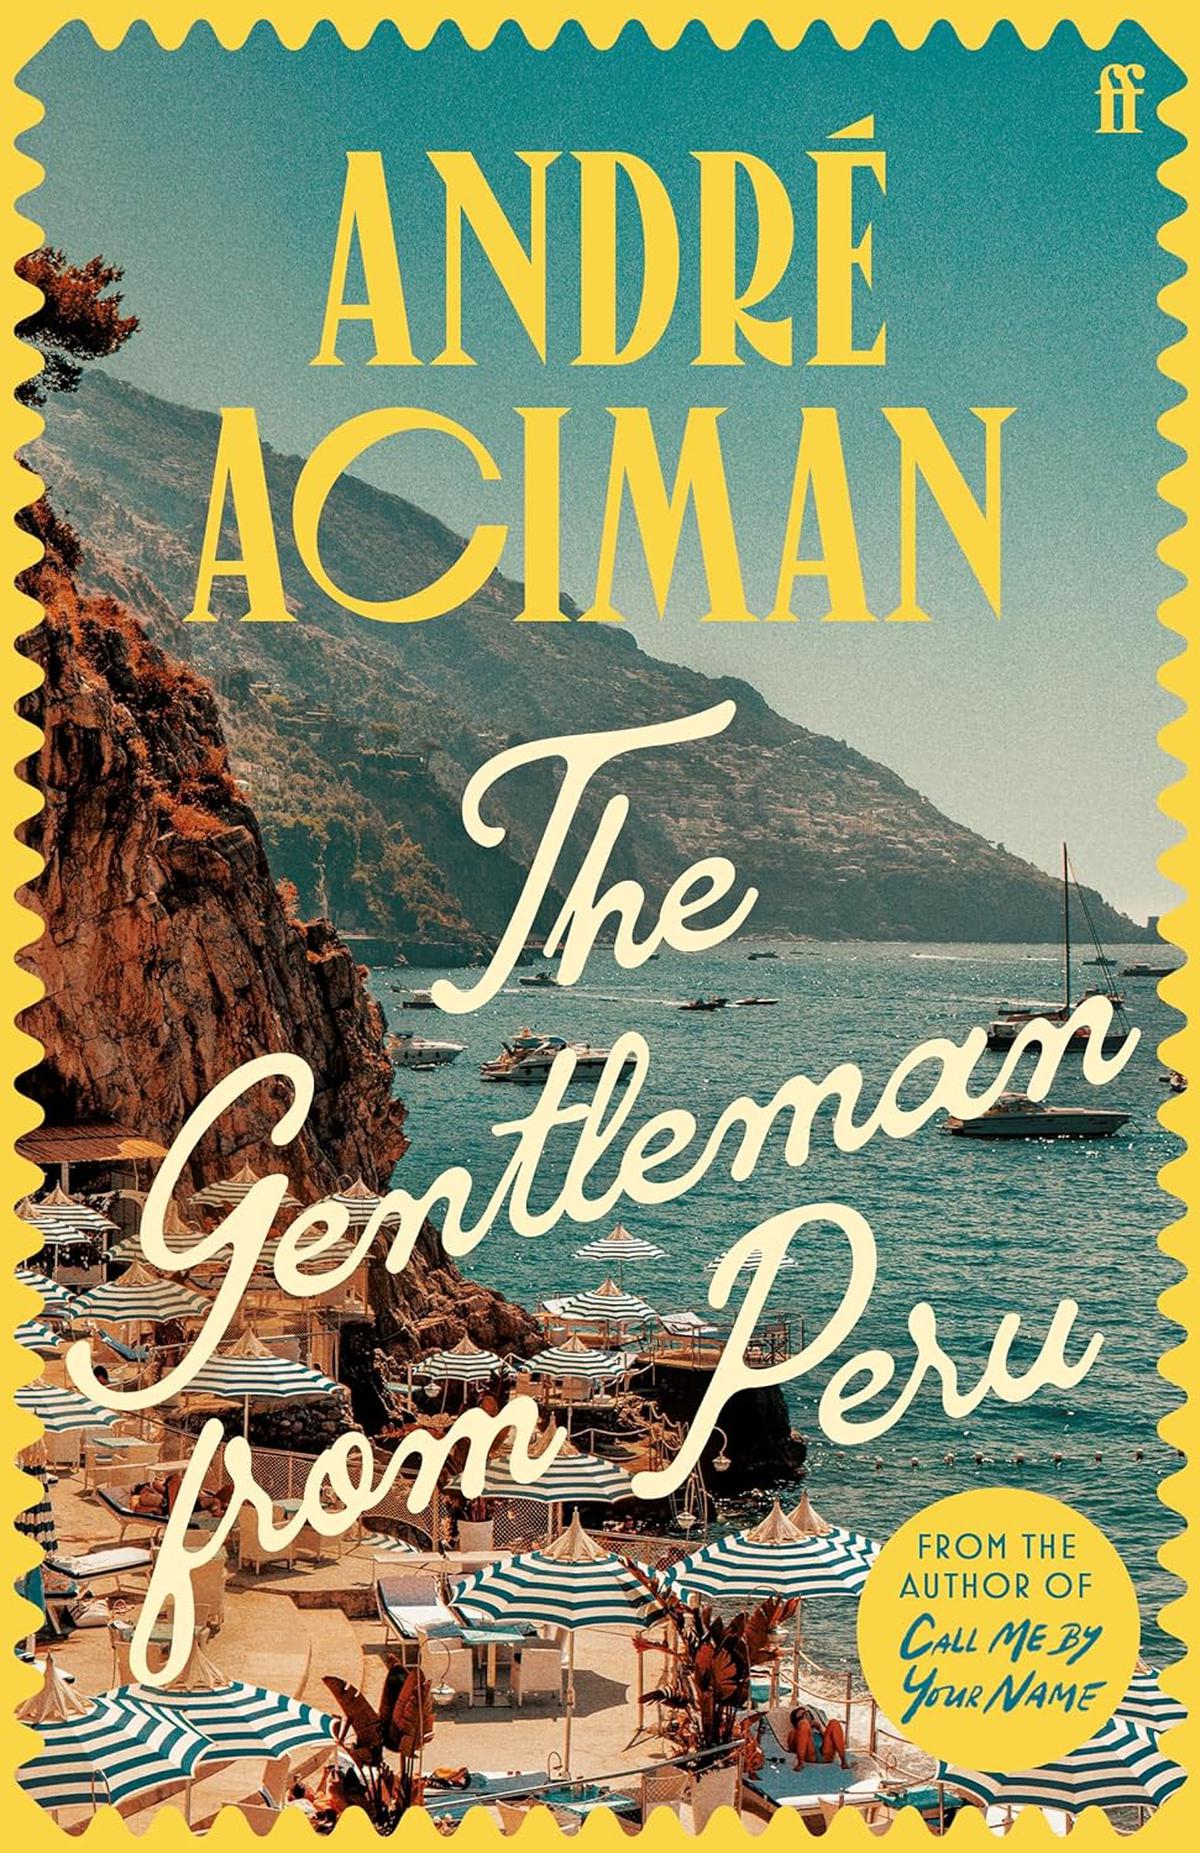 AndrÃ© Acimanâs latest novella âThe Gentleman from Peruâ